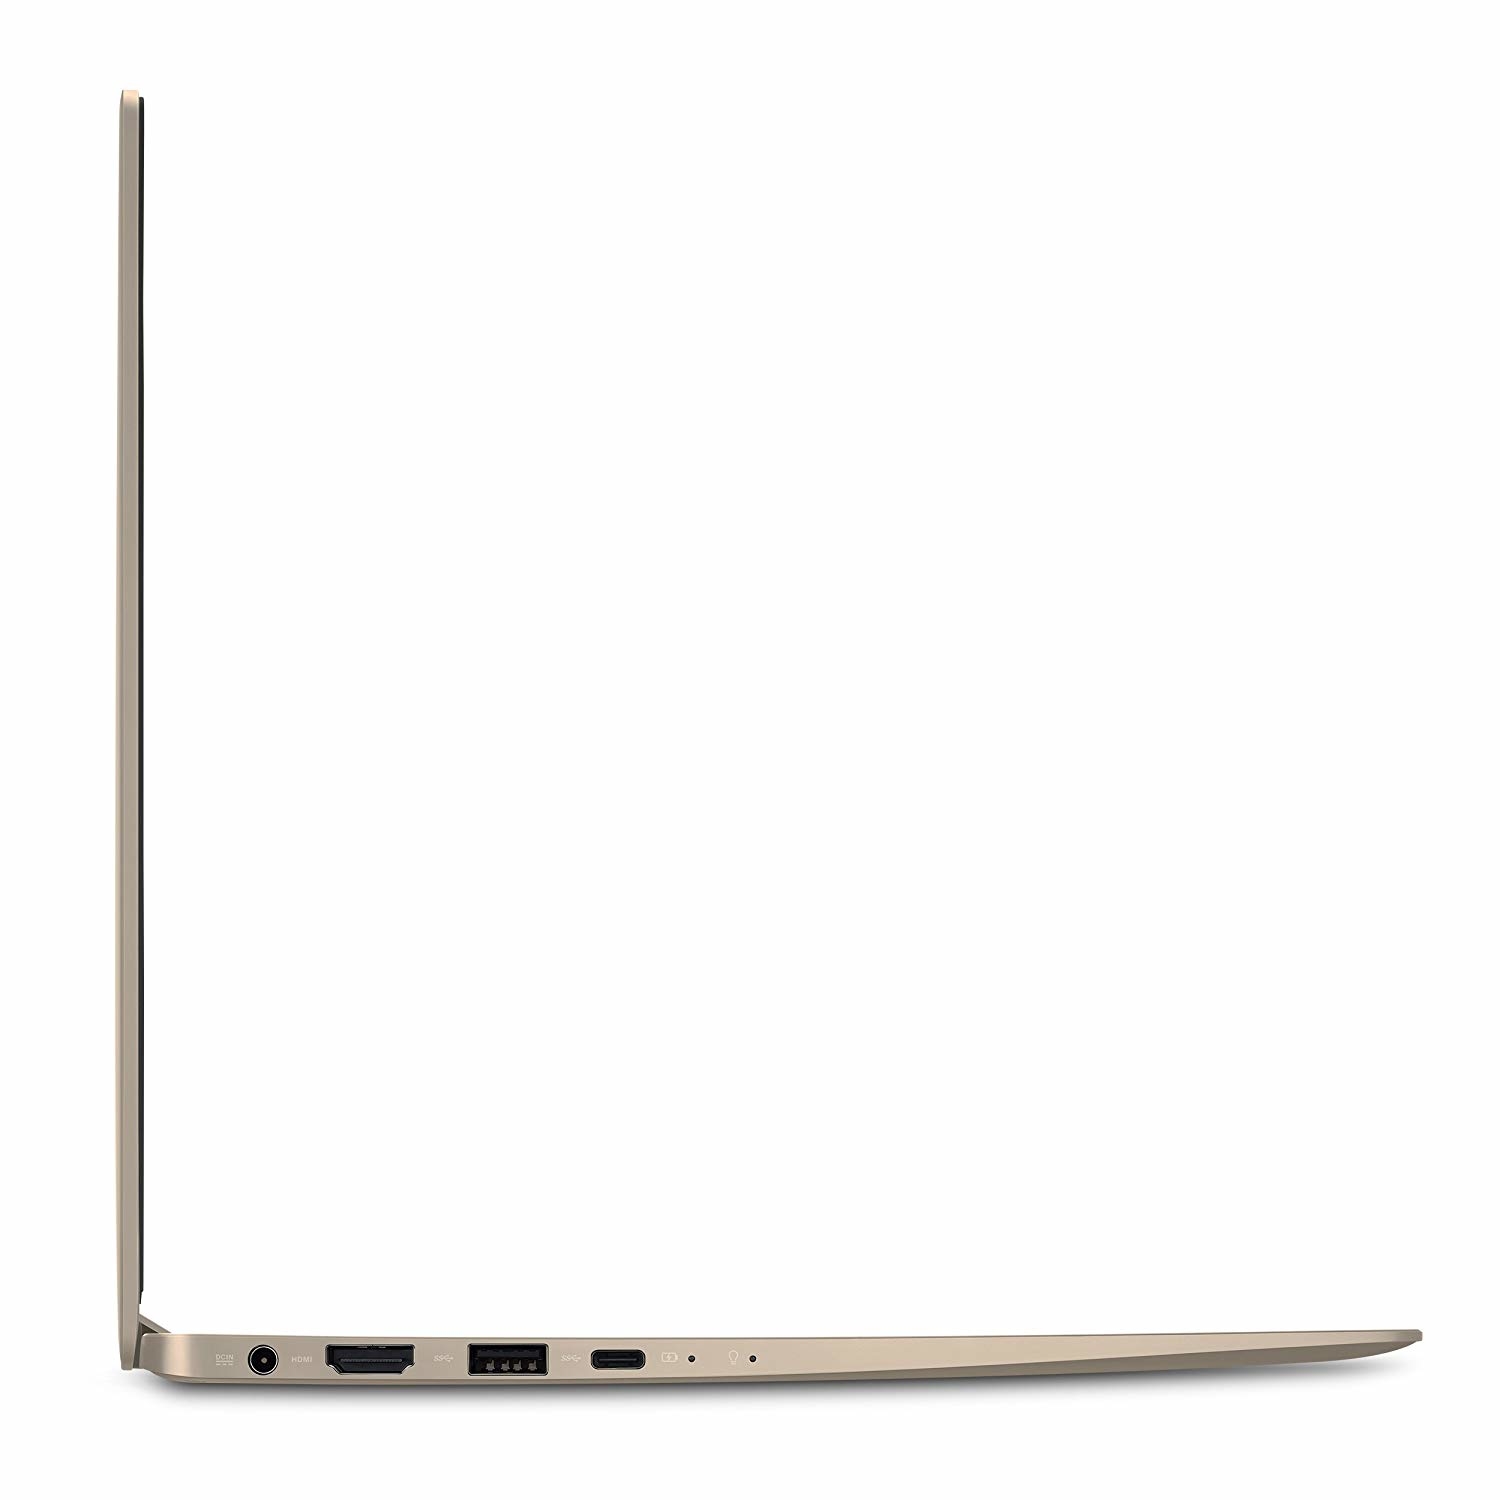 Купить Ноутбук ASUS ZenBook 13 UX331UA Icicle Gold (UX331UA-DS71) - ITMag